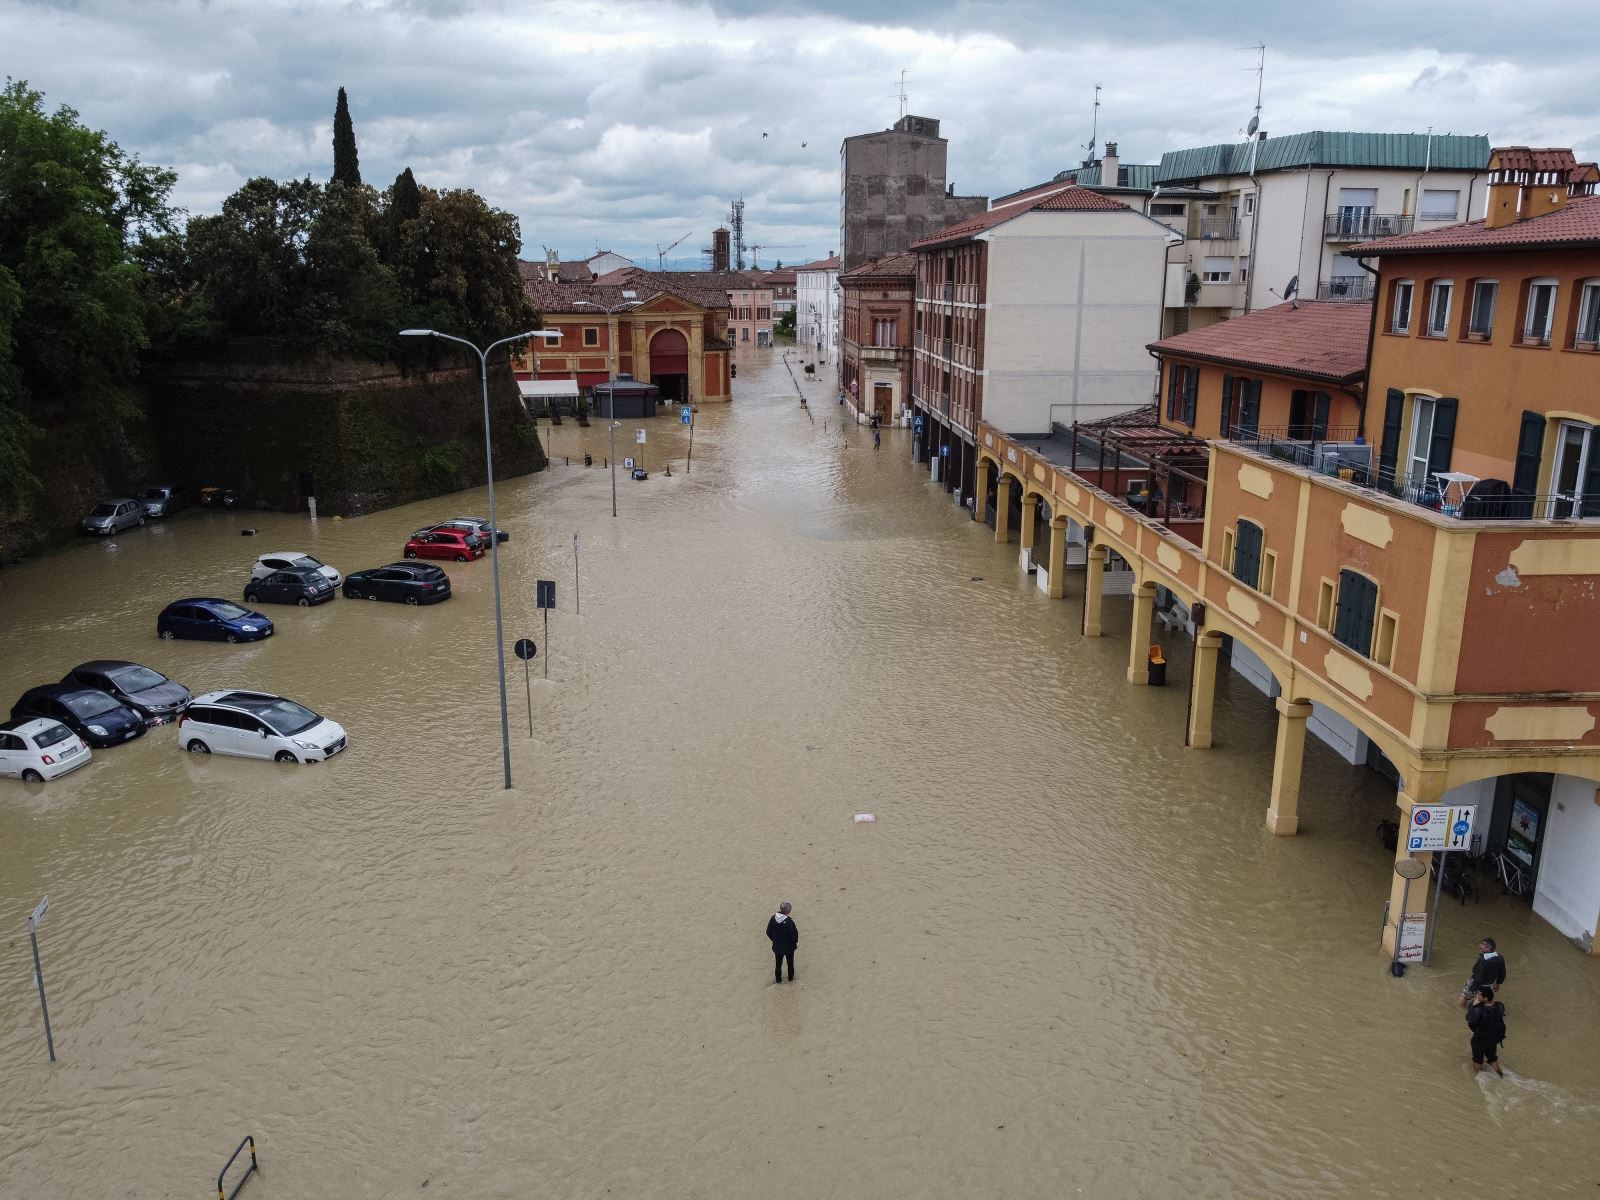 Phần lớn diện tích của vùng Emilia Romagna chìm trong nước